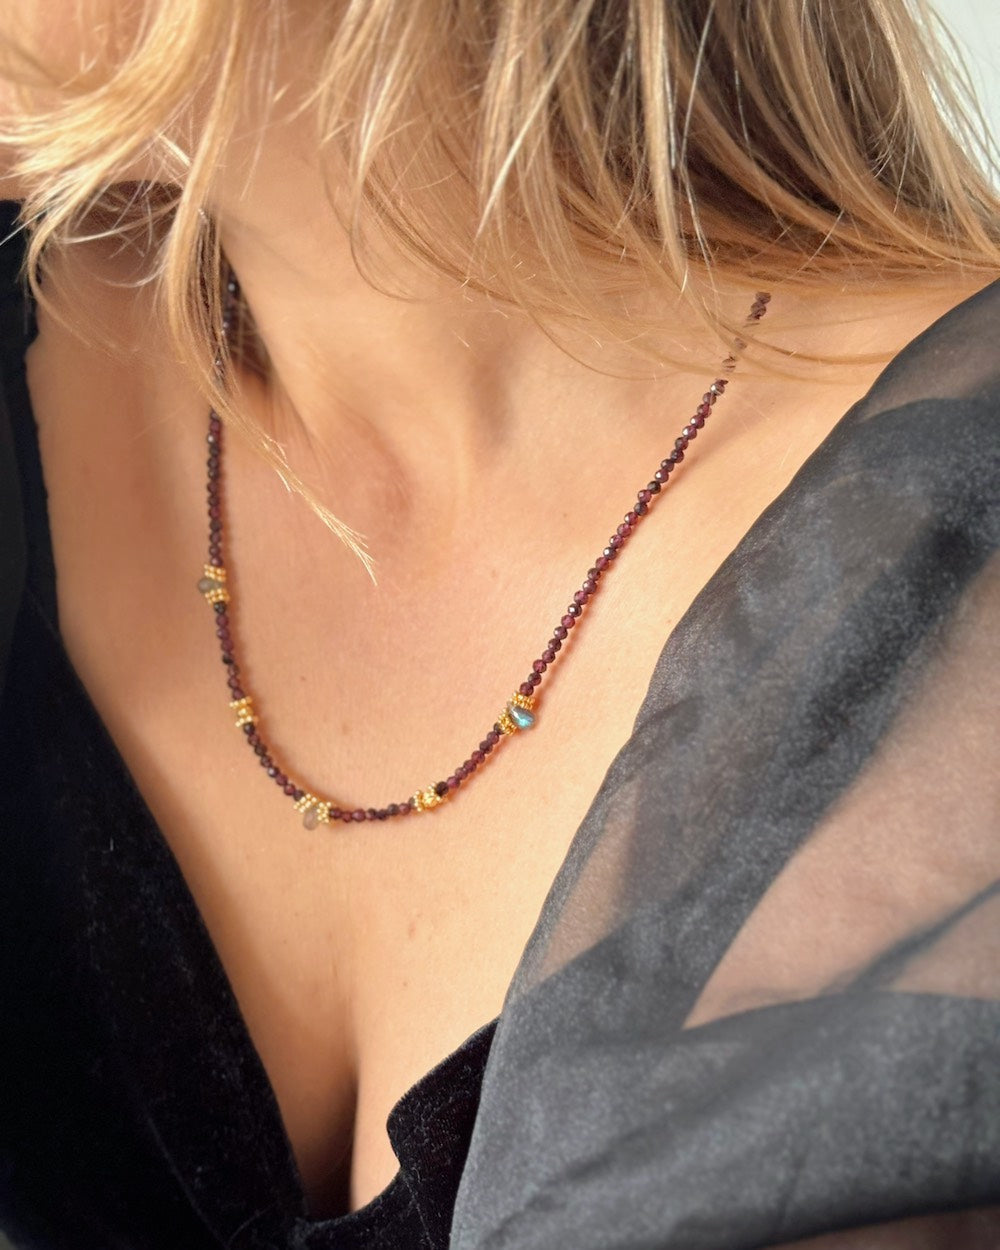 Garnet and labradorite gemstone necklace